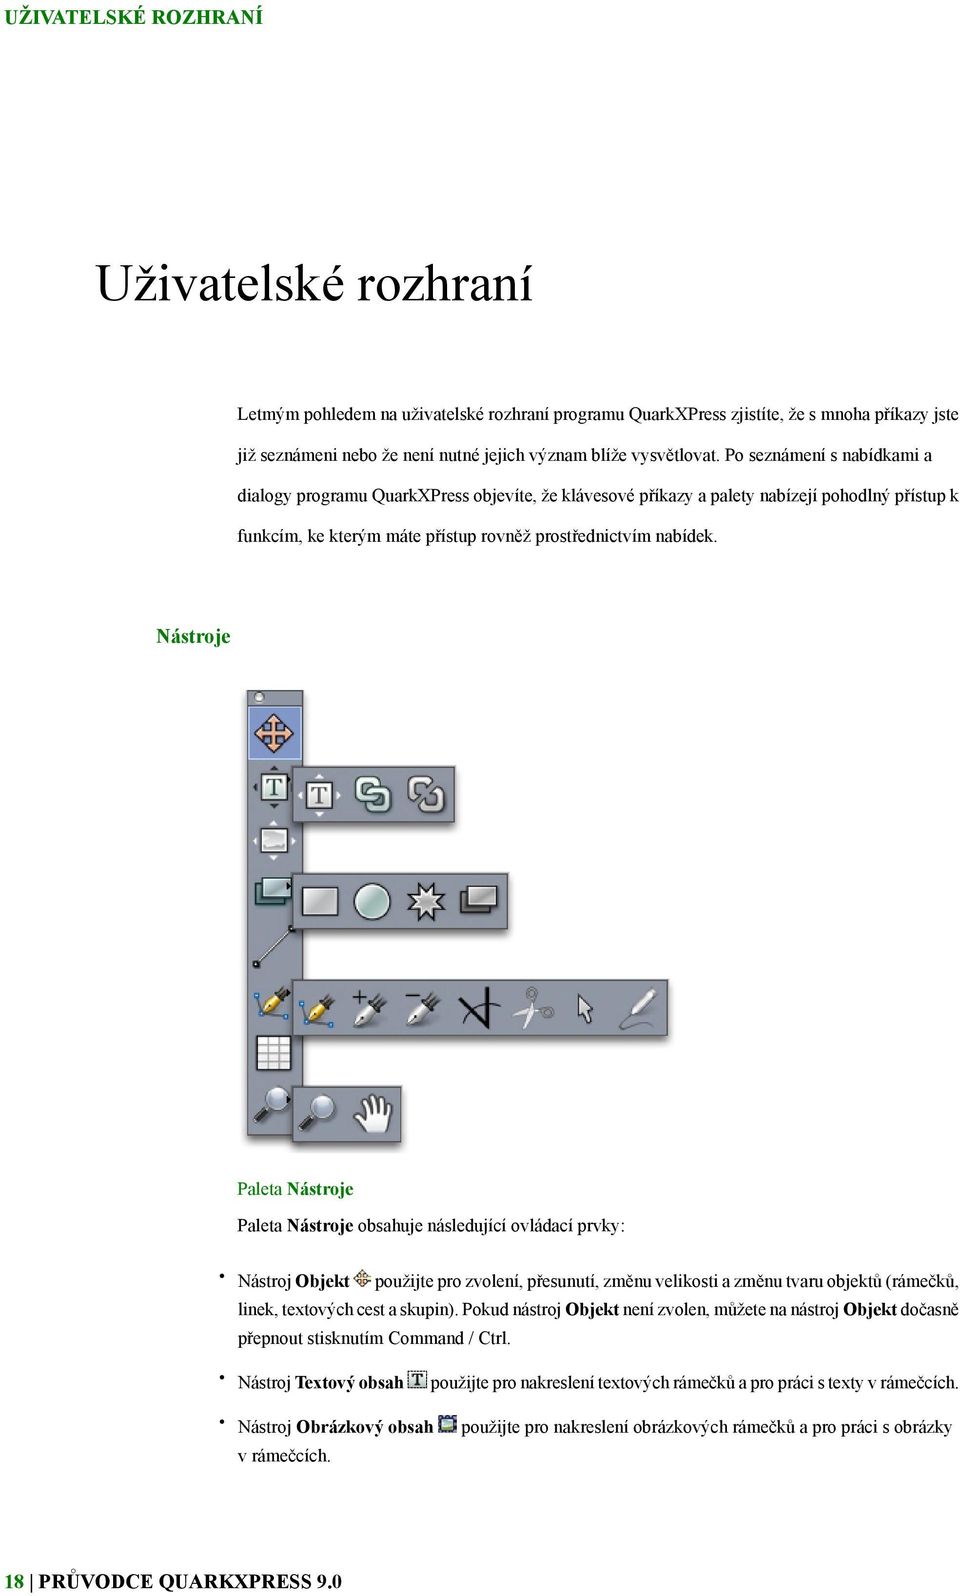 Nástroje Paleta Nástroje Paleta Nástroje obsahuje následující ovládací prvky: Nástroj Objekt použijte pro zvolení, přesunutí, změnu velikosti a změnu tvaru objektů (rámečků, linek, textových cest a